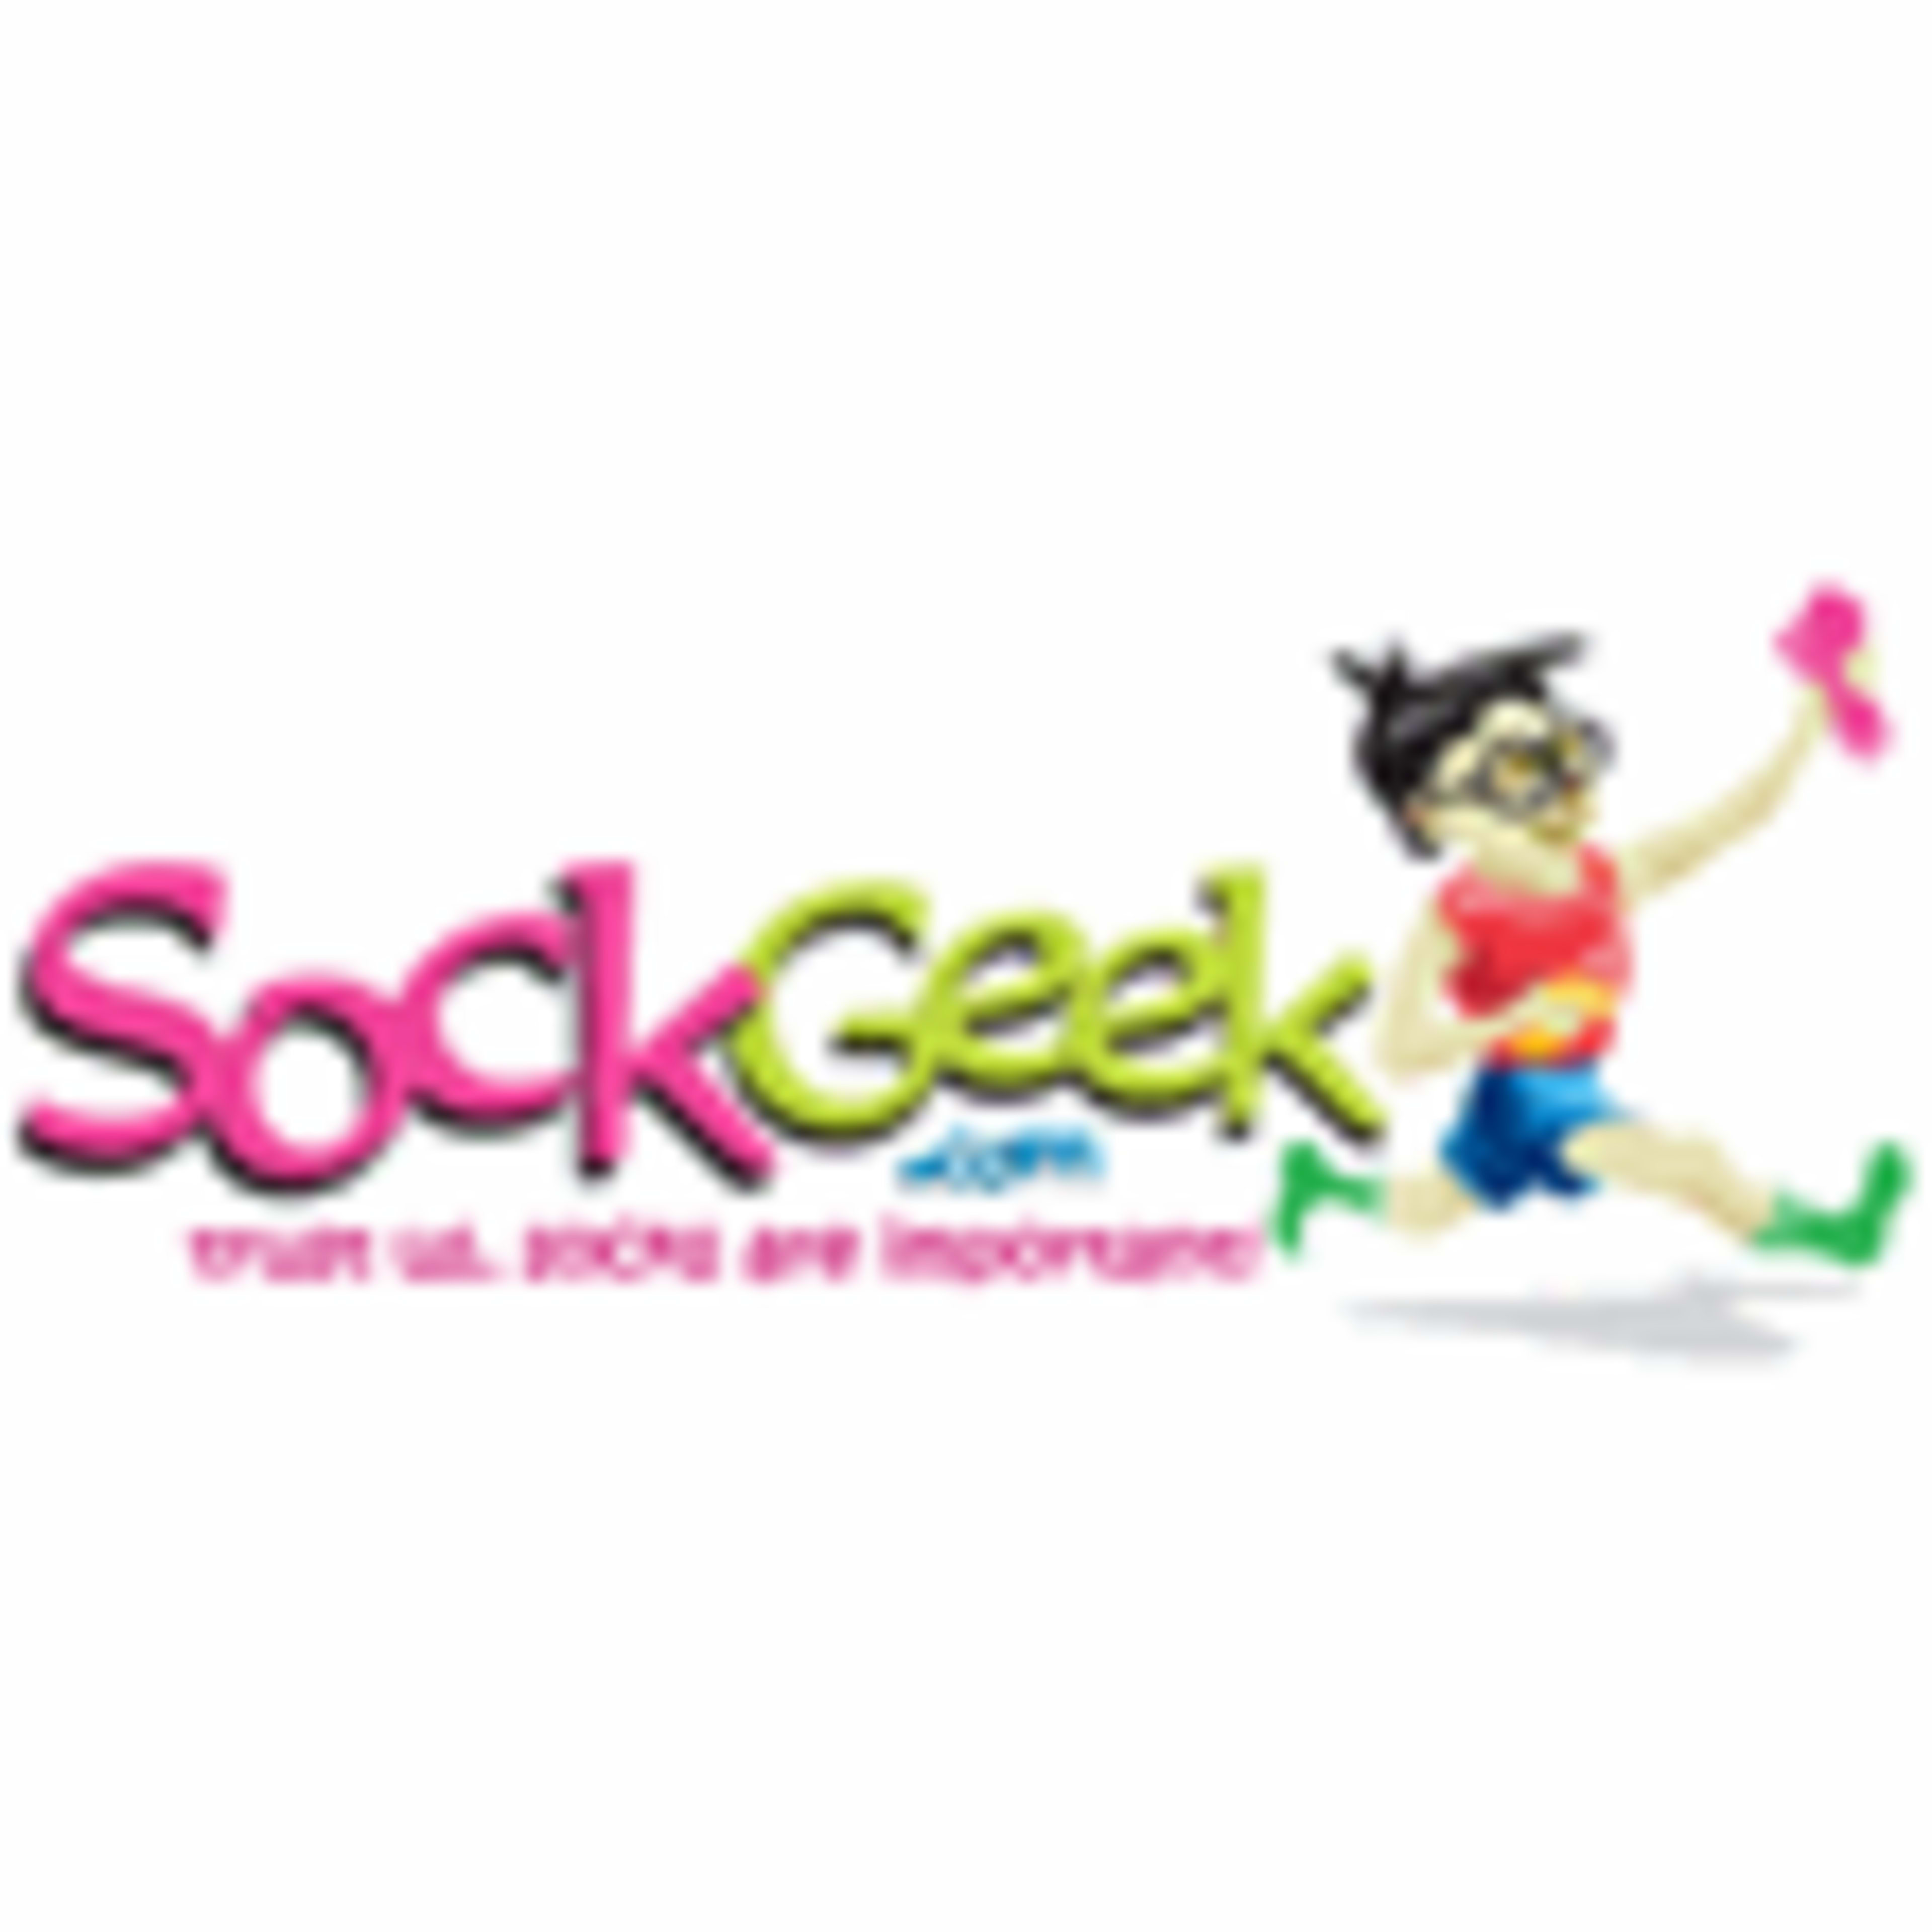 Sock Geek Code